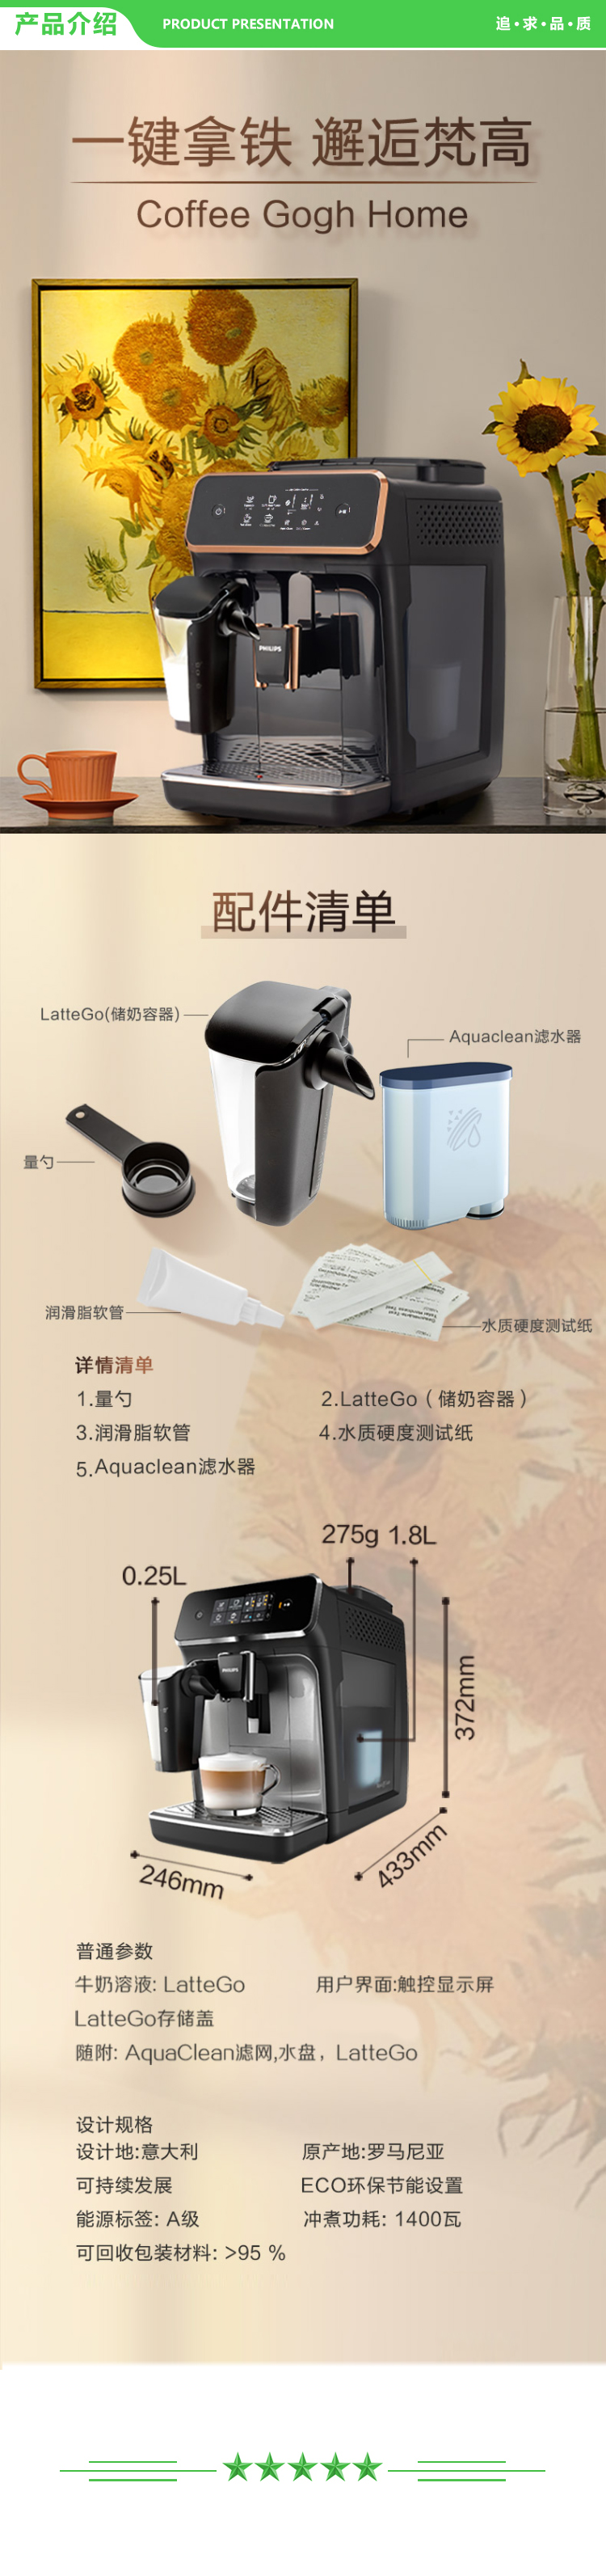 飞利浦 PHILIPS EP2136 72  咖啡机 意式全自动Lattego现磨咖啡机  一键卡布奇诺自带奶壶 .jpg